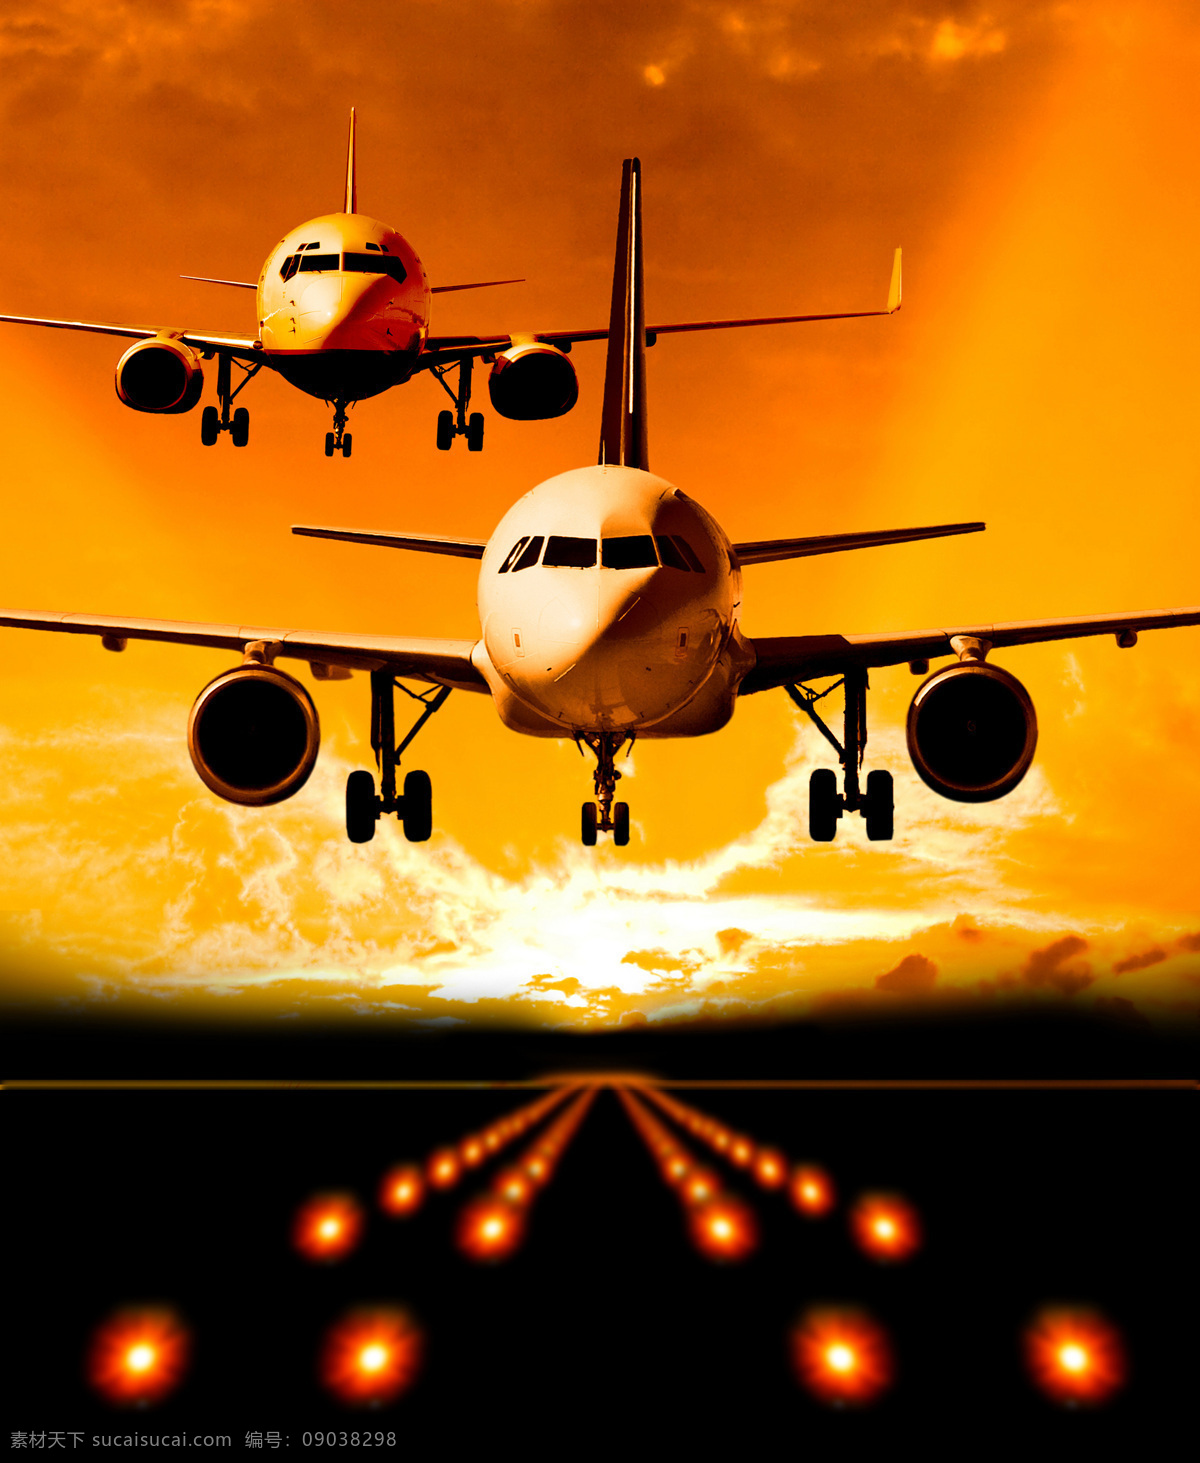 黄昏 时 飞机 航空飞机 客机 飞行 天空 机场 降落 飞机图片 现代科技